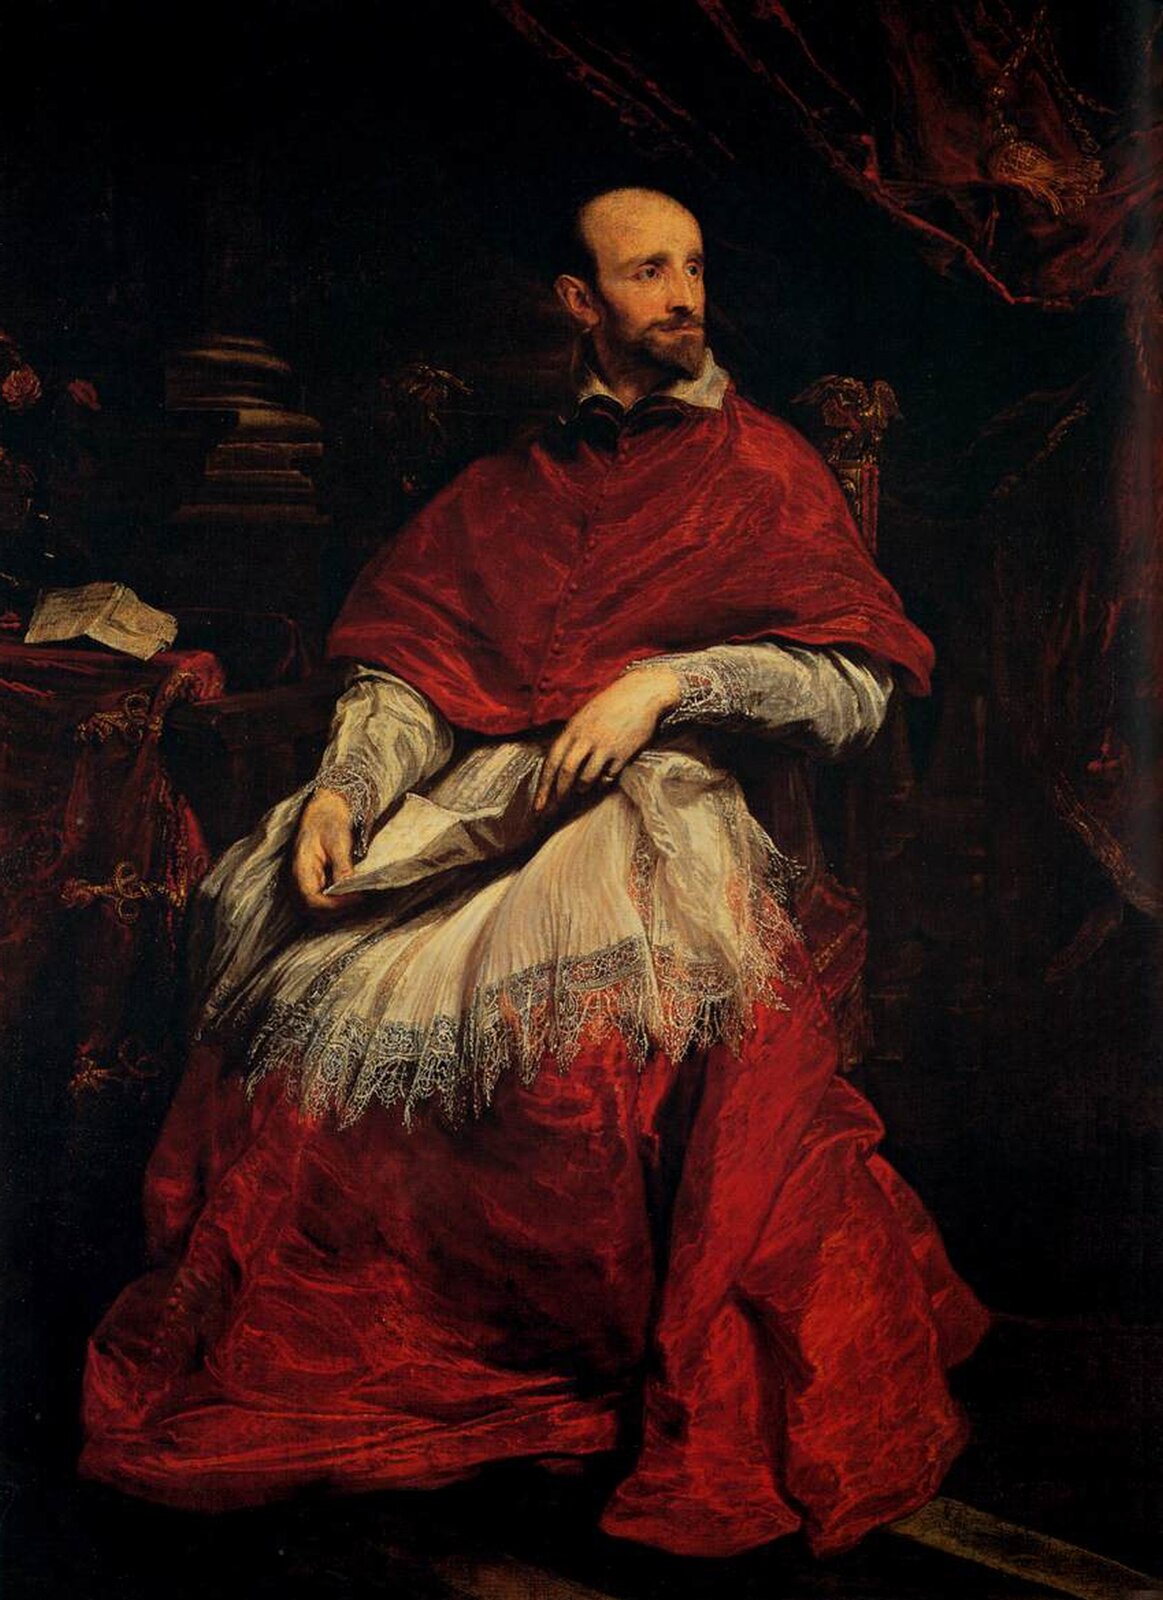 Ilustracja przedstawia obraz Antoona van Dycka „Portret kardynała Bentivoglio”. Na obrazie znajduje się mężczyzna w średnim wieku. Postać siedzi na fotelu, ma smutny wyraz twarzy. Ubrany jest w czerwoną suknię z białą koronką. Na kolanach trzyma kartkę. Spogląda w prawą stronę. Za mężczyzną znajduje się stos książek oraz ciemne tło.